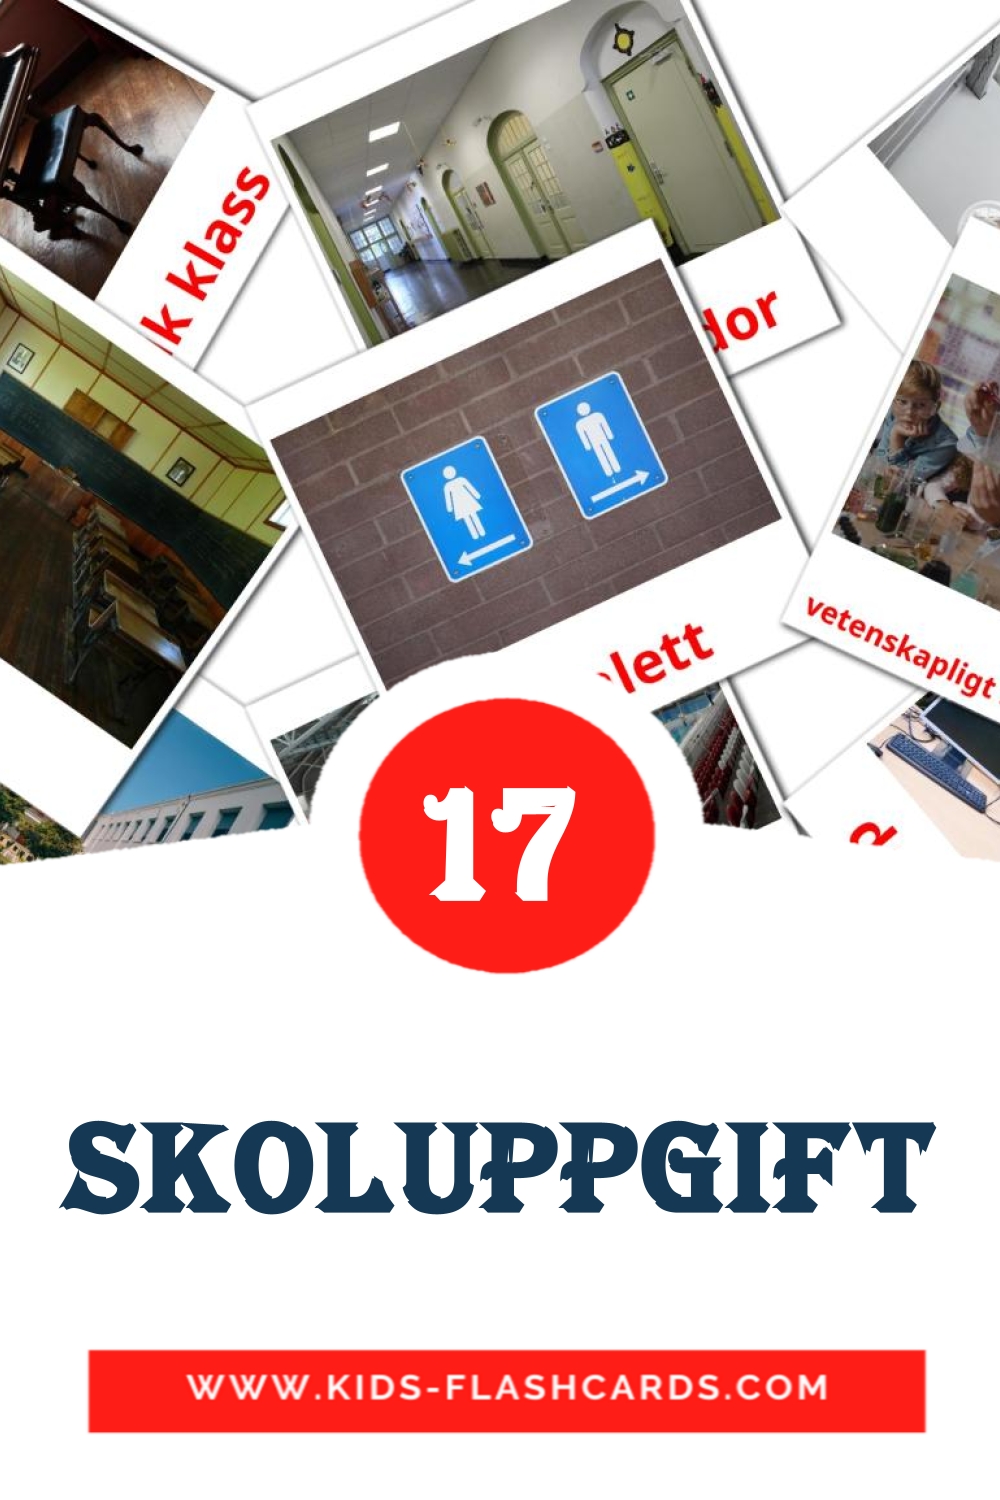 17 Skoluppgift fotokaarten voor kleuters in het zweeds